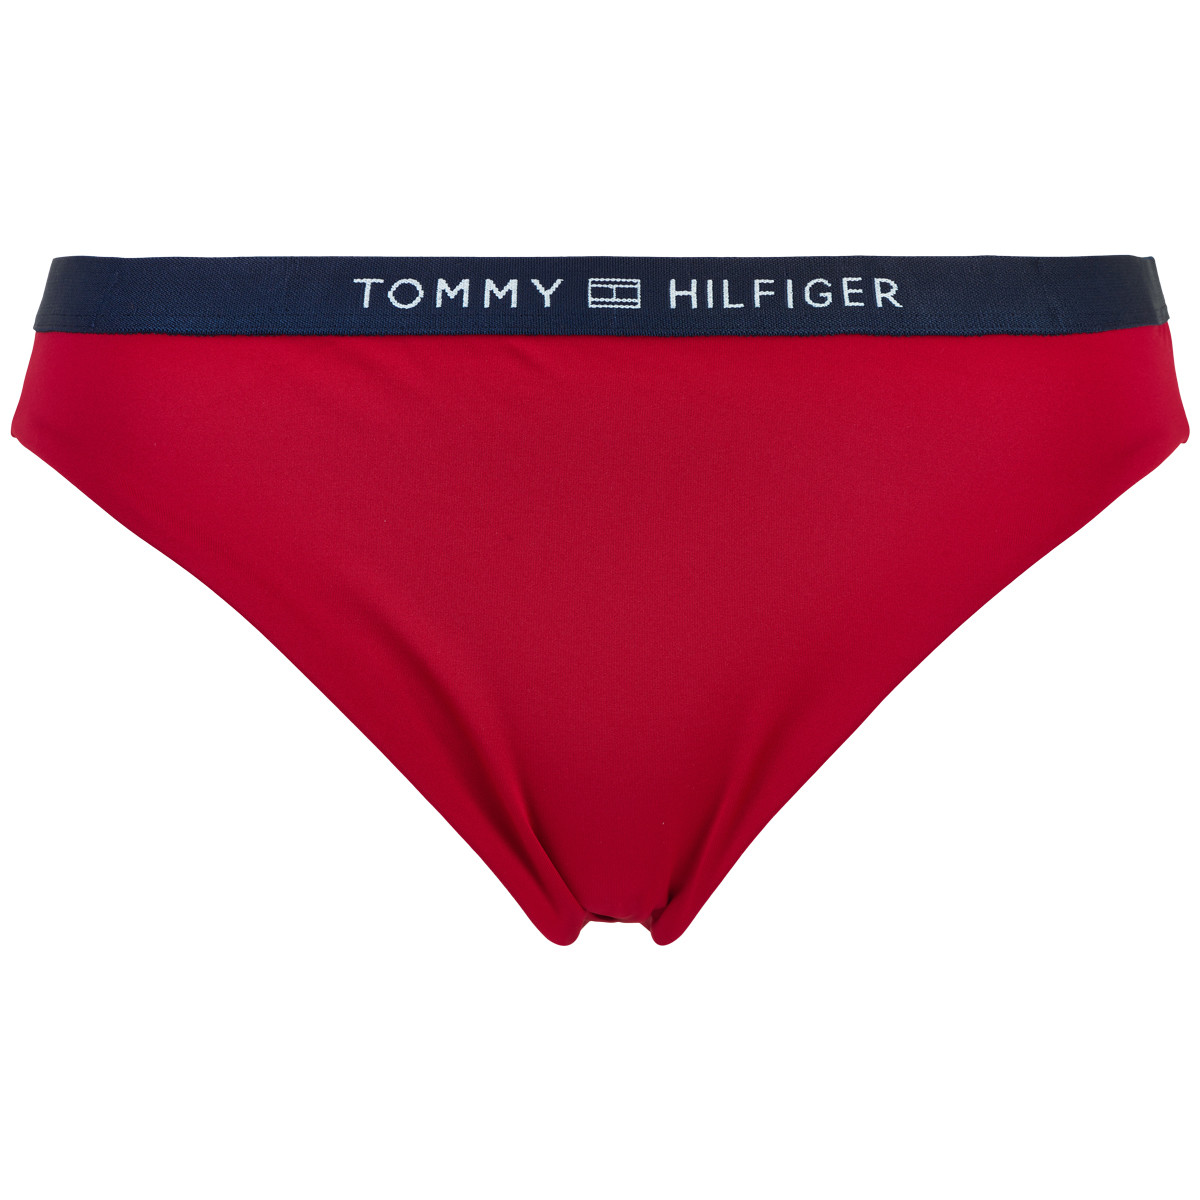 Tommy Hilfiger Lingeri Bikini Tai W Xlg, Farve: Rød, Størrelse: XS, Dame